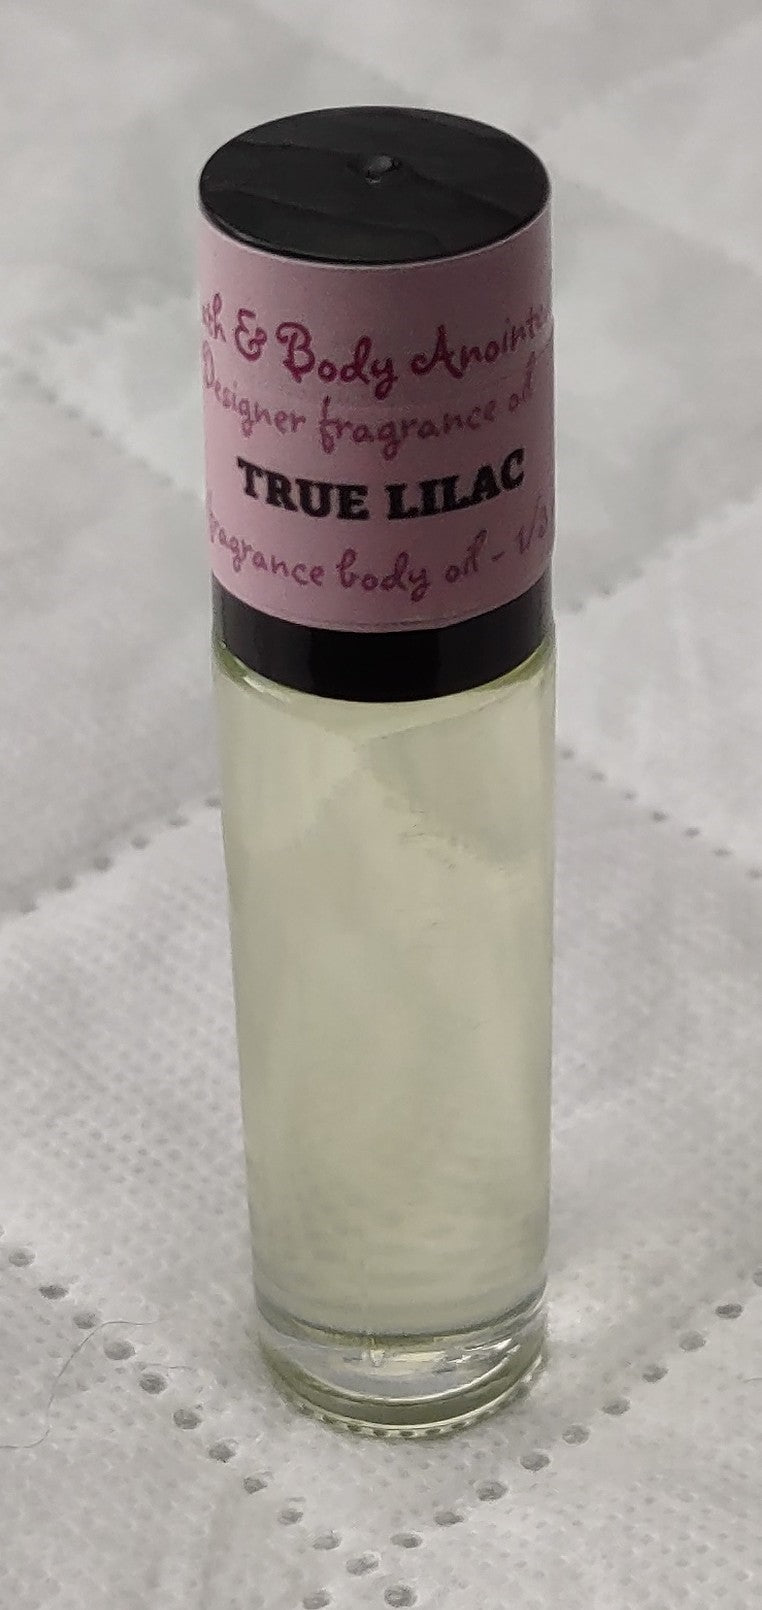 True Lilac Fragrance